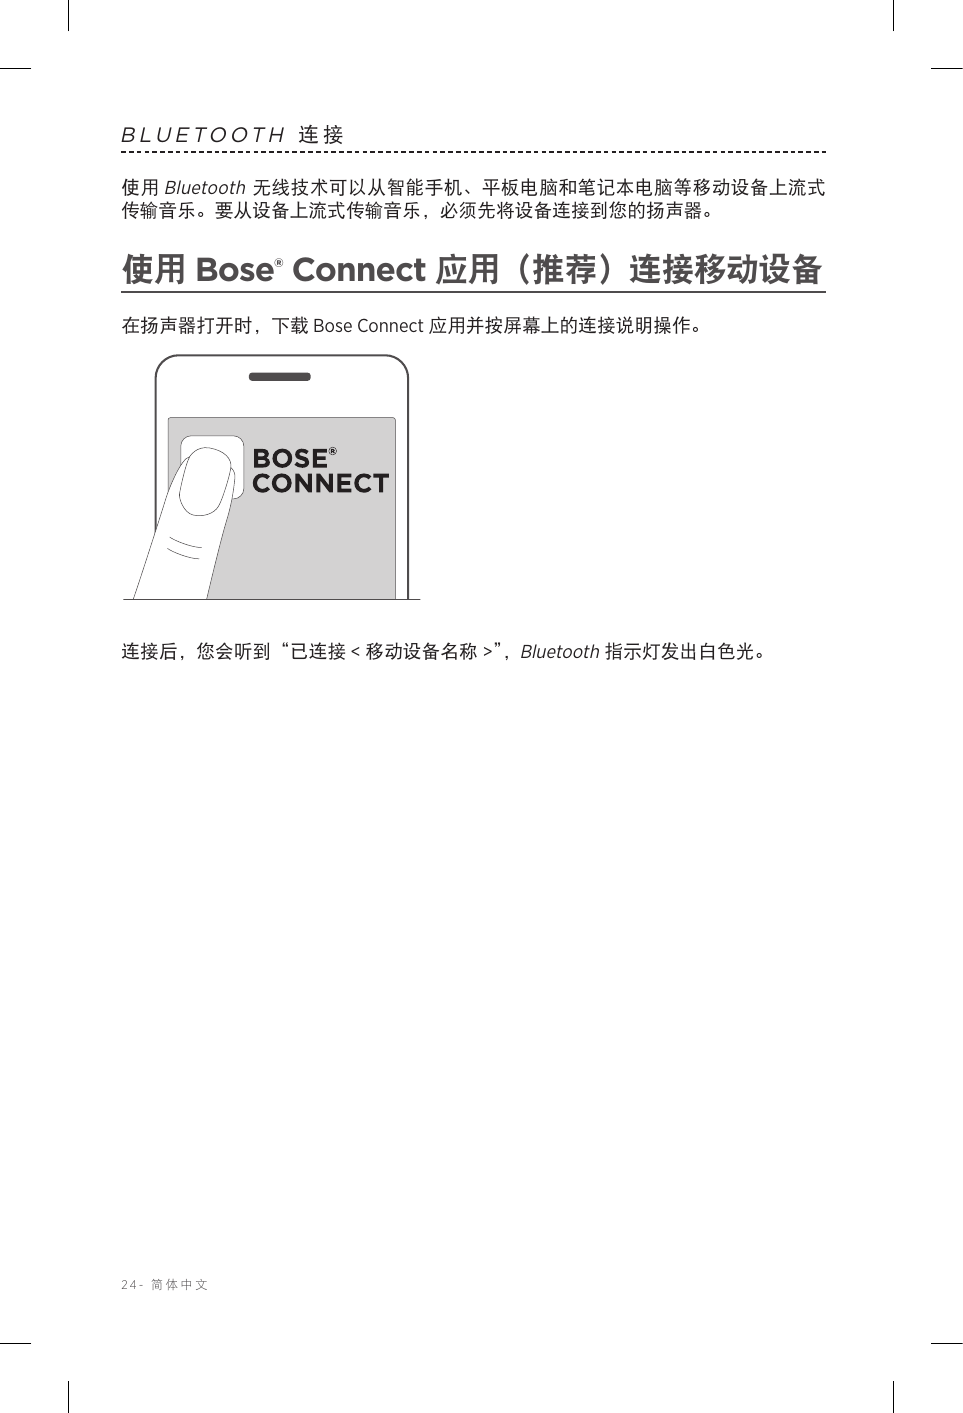 24-  简体中文BLUETOOTH 连接使用 Bluetooth 无线技术可以从智能手机、平板电脑和笔记本电脑等移动设备上流式传输音乐。要从设备上流式传输音乐，必须先将设备连接到您的扬声器。使用 Bose® Connect 应用（推荐）连接移动设备在扬声器打开时，下载 Bose Connect 应用并按屏幕上的连接说明操作。连接后，您会听到“已连接 &lt; 移动设备名称 &gt;”，Bluetooth 指示灯发出白色光。